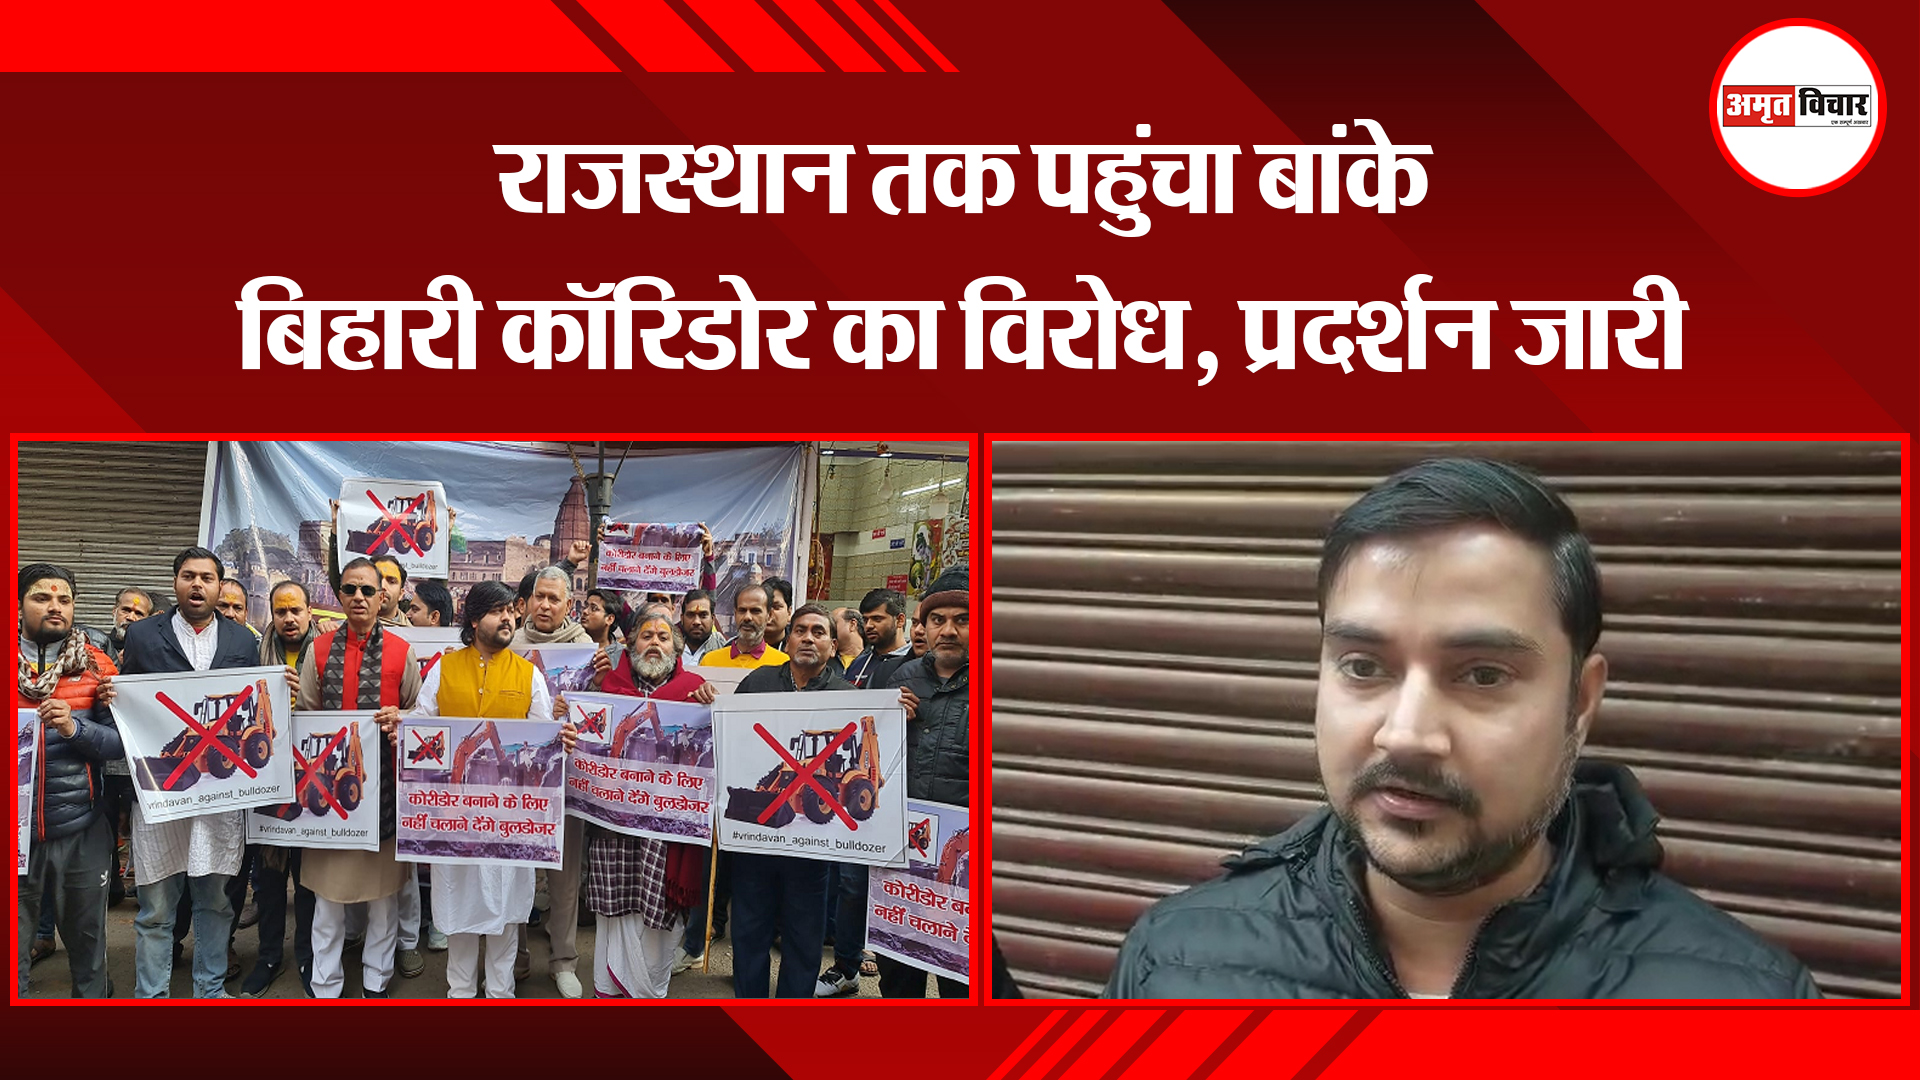 मथुरा: राजस्थान तक पहुंचा बांके बिहारी कॉरिडोर का विरोध, प्रदर्शन जारी